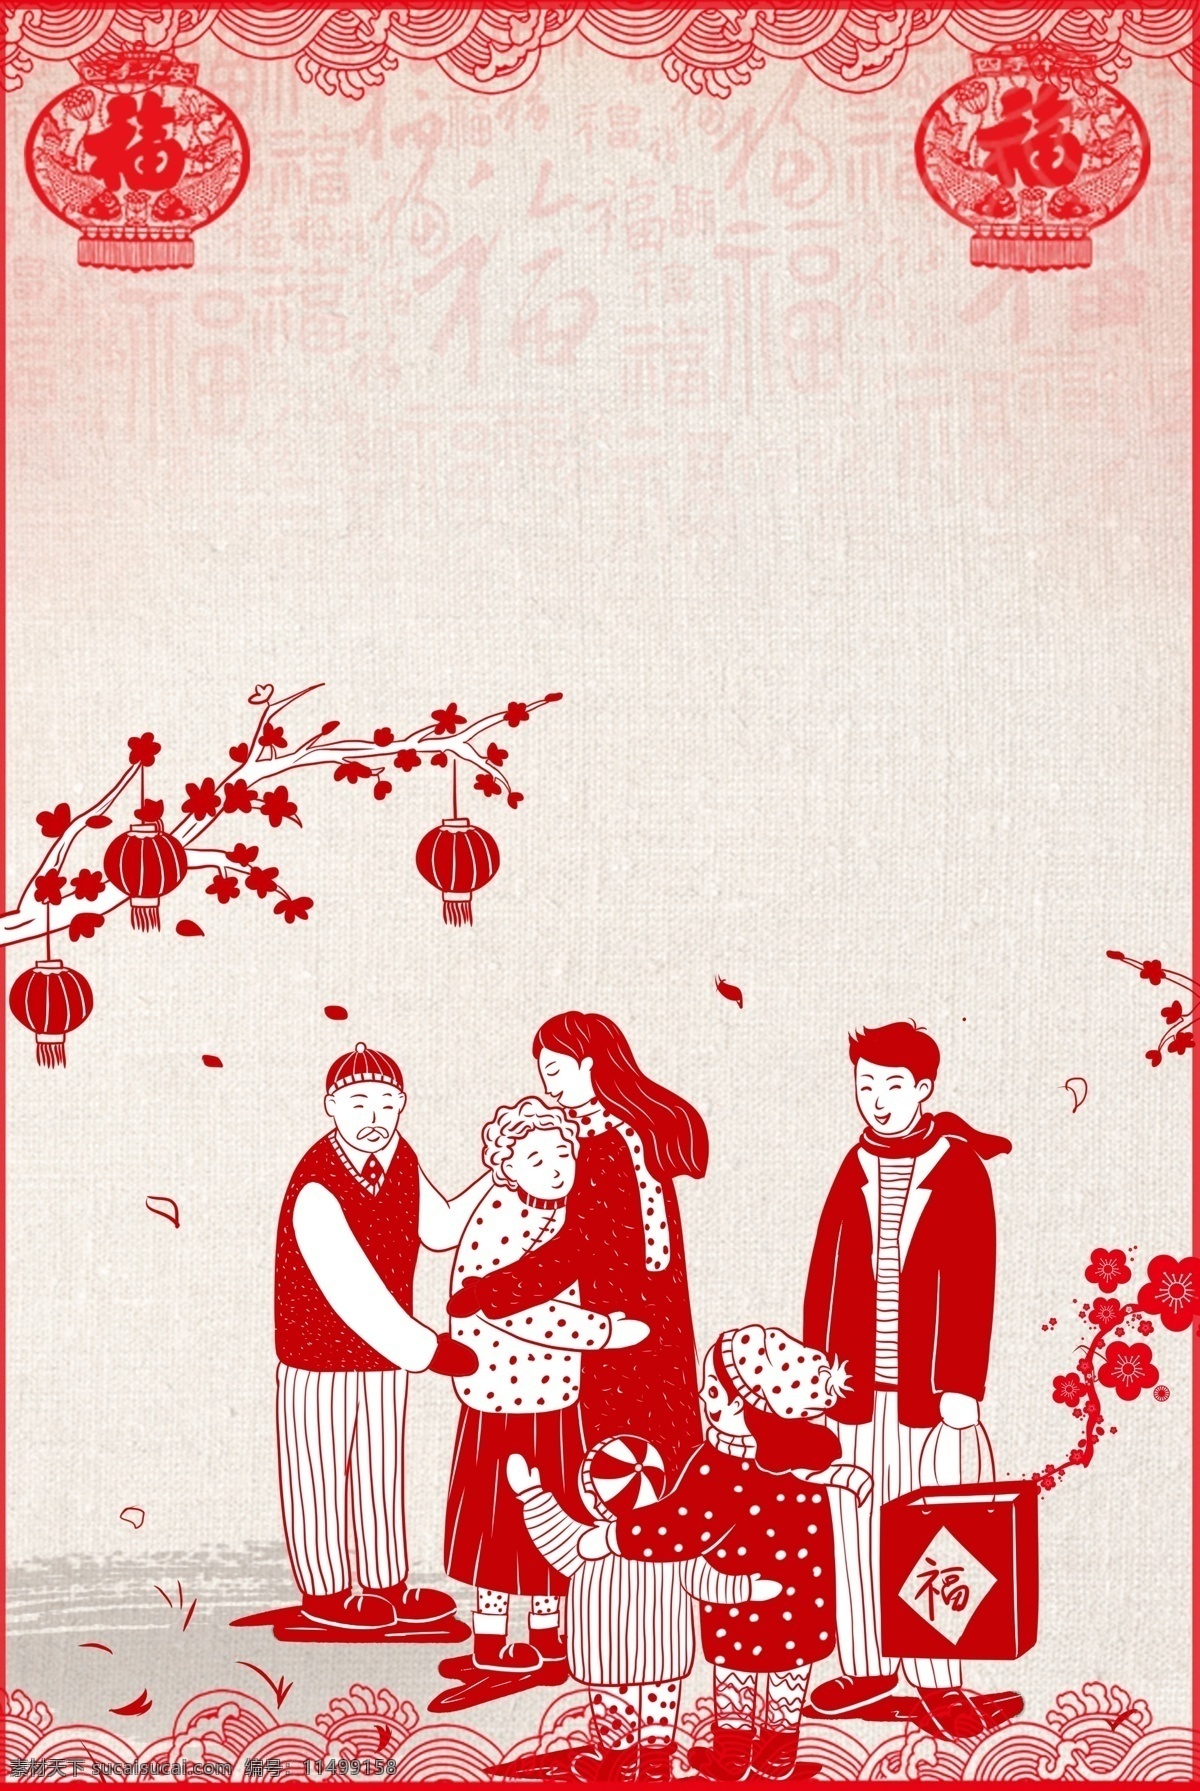 中国 剪纸 风 2019 年 猪年 海报 背景 剪纸风 2019年 团圆 生肖猪 一家人 中国风 手绘